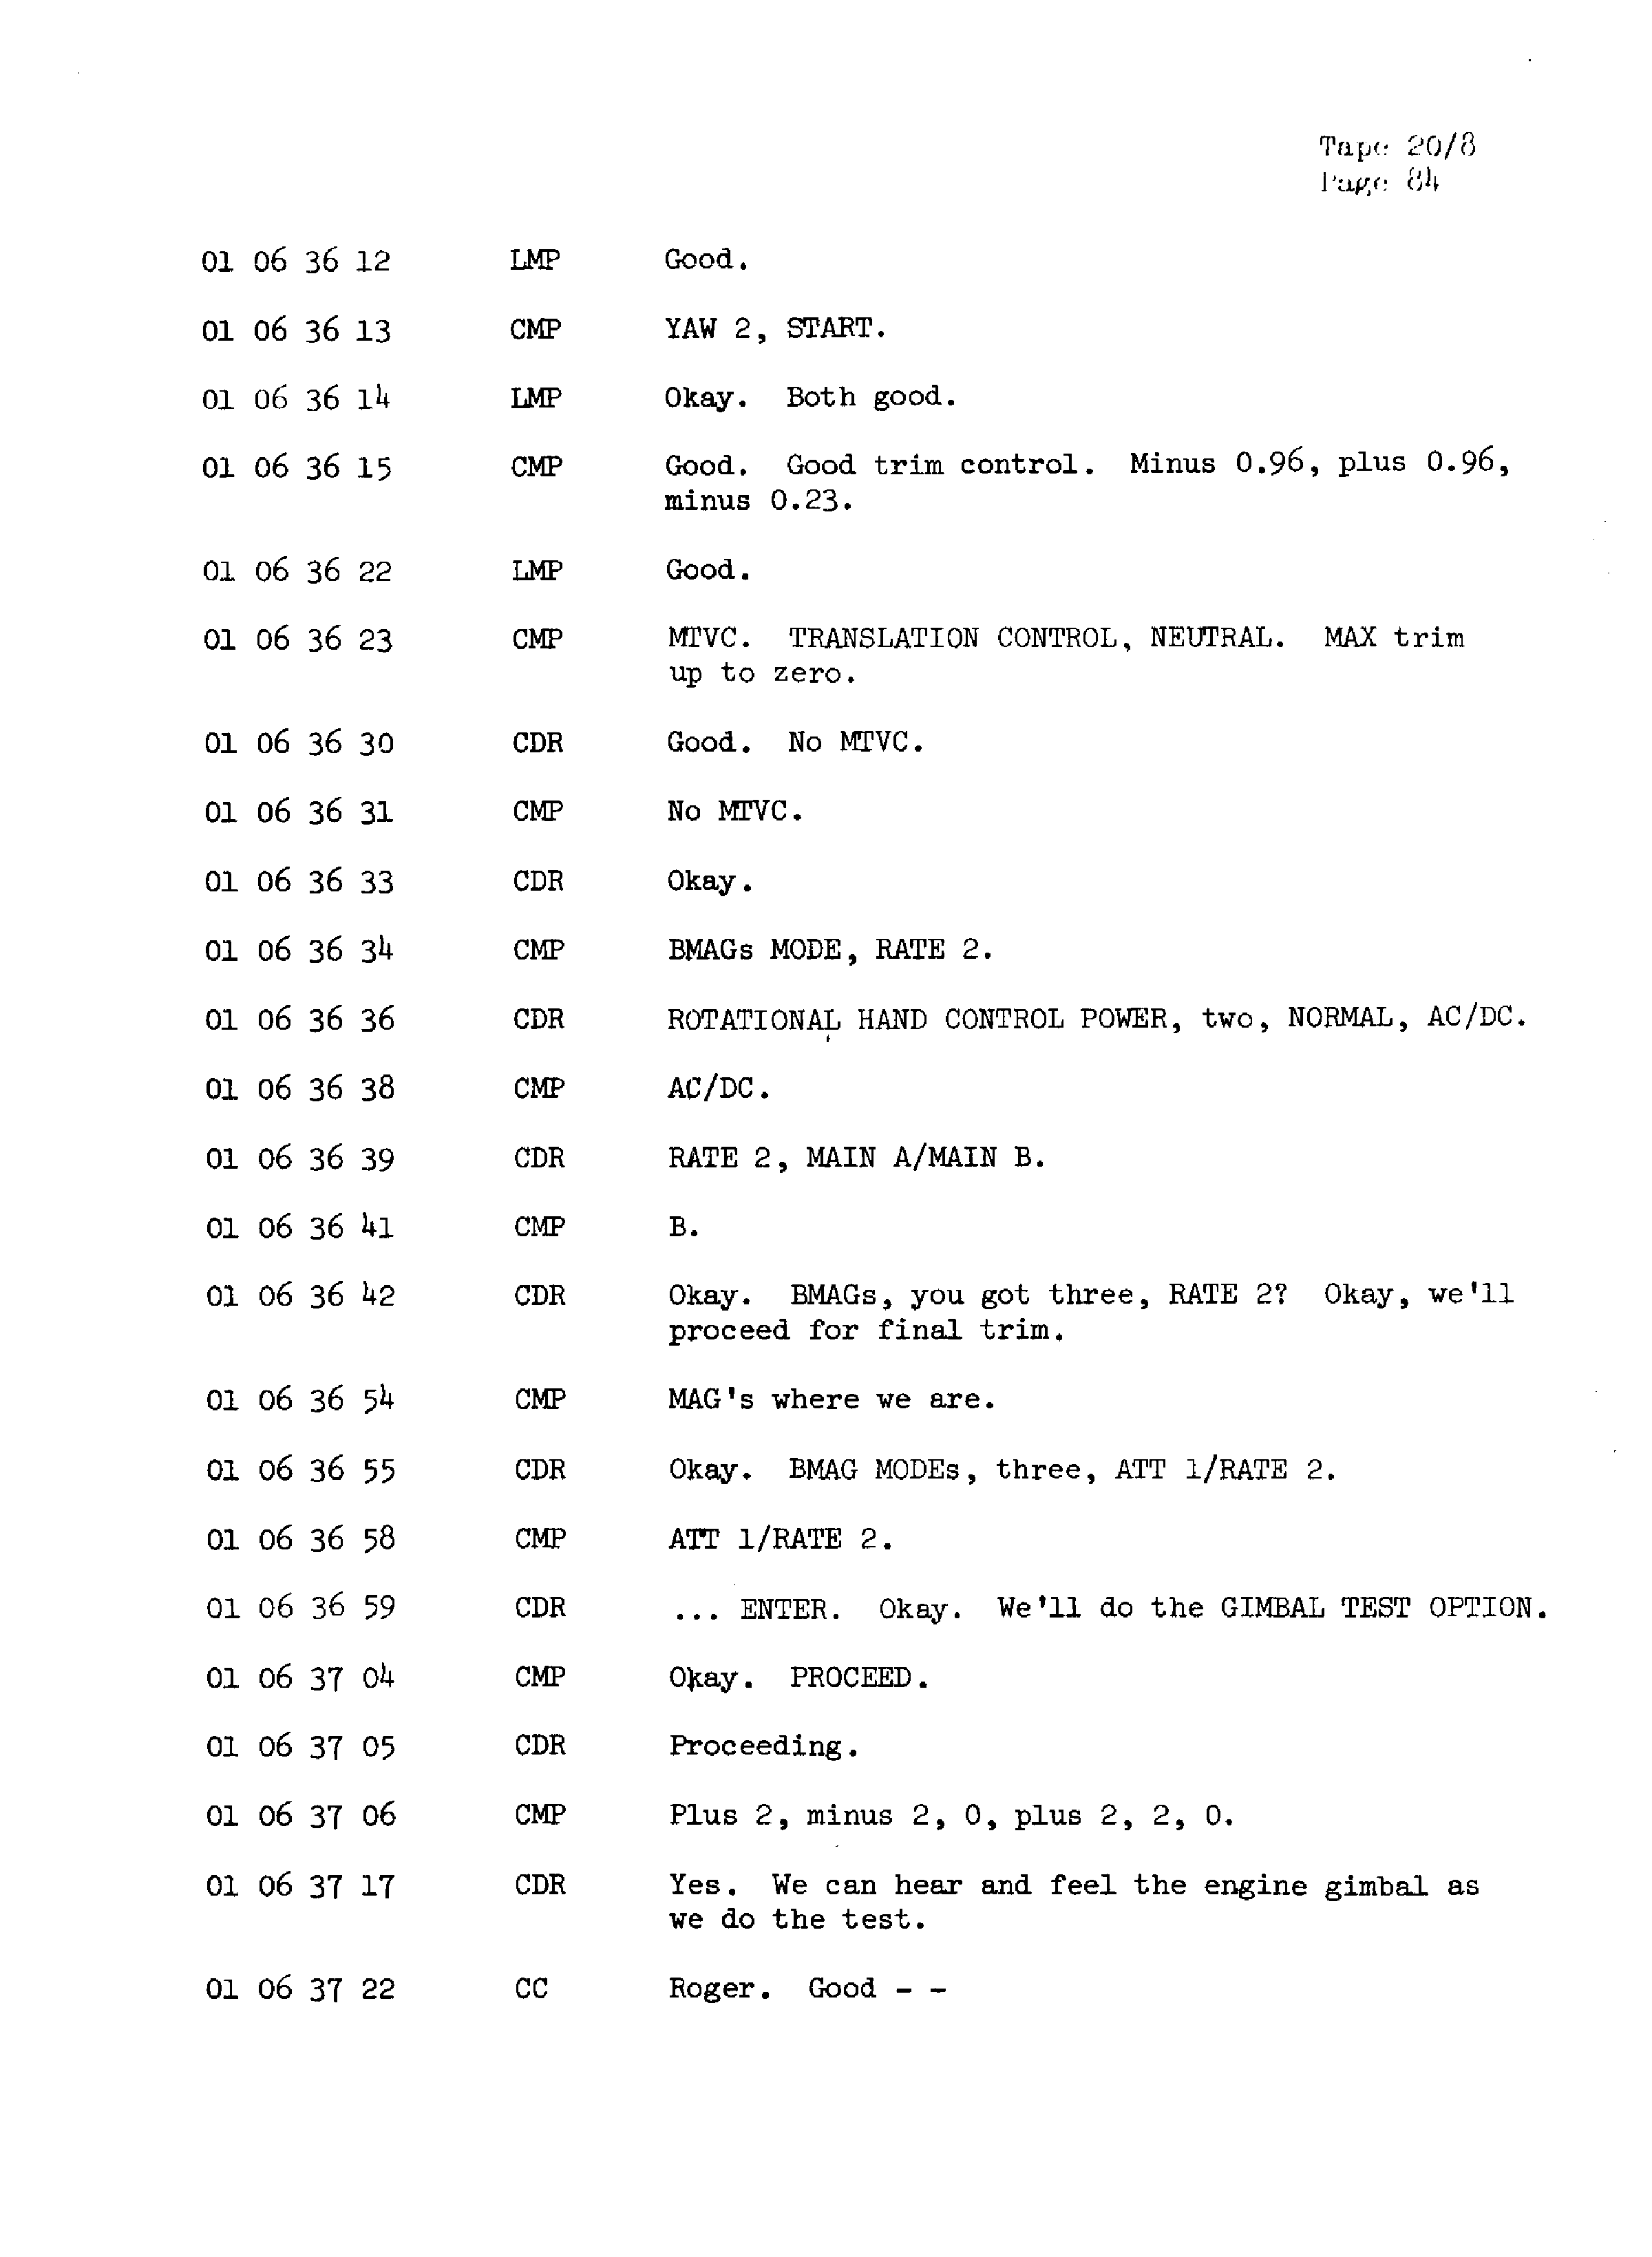 Page 91 of Apollo 13’s original transcript